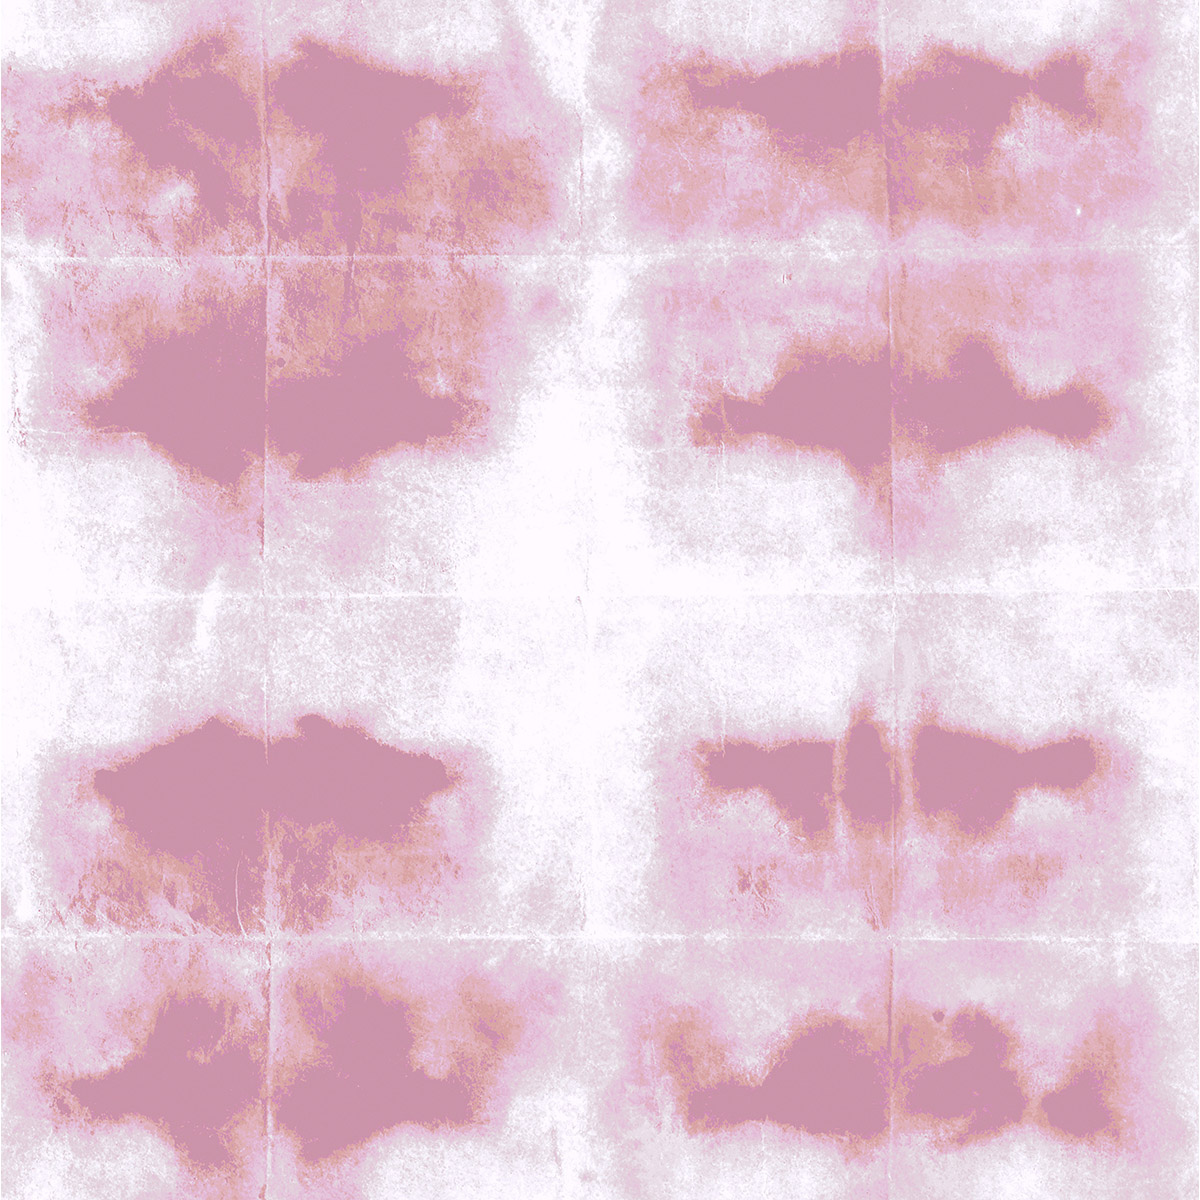 6B-Wabi-Rose-poudre-Detail-Laur-Meyrieux-papierpeint-wallpaper